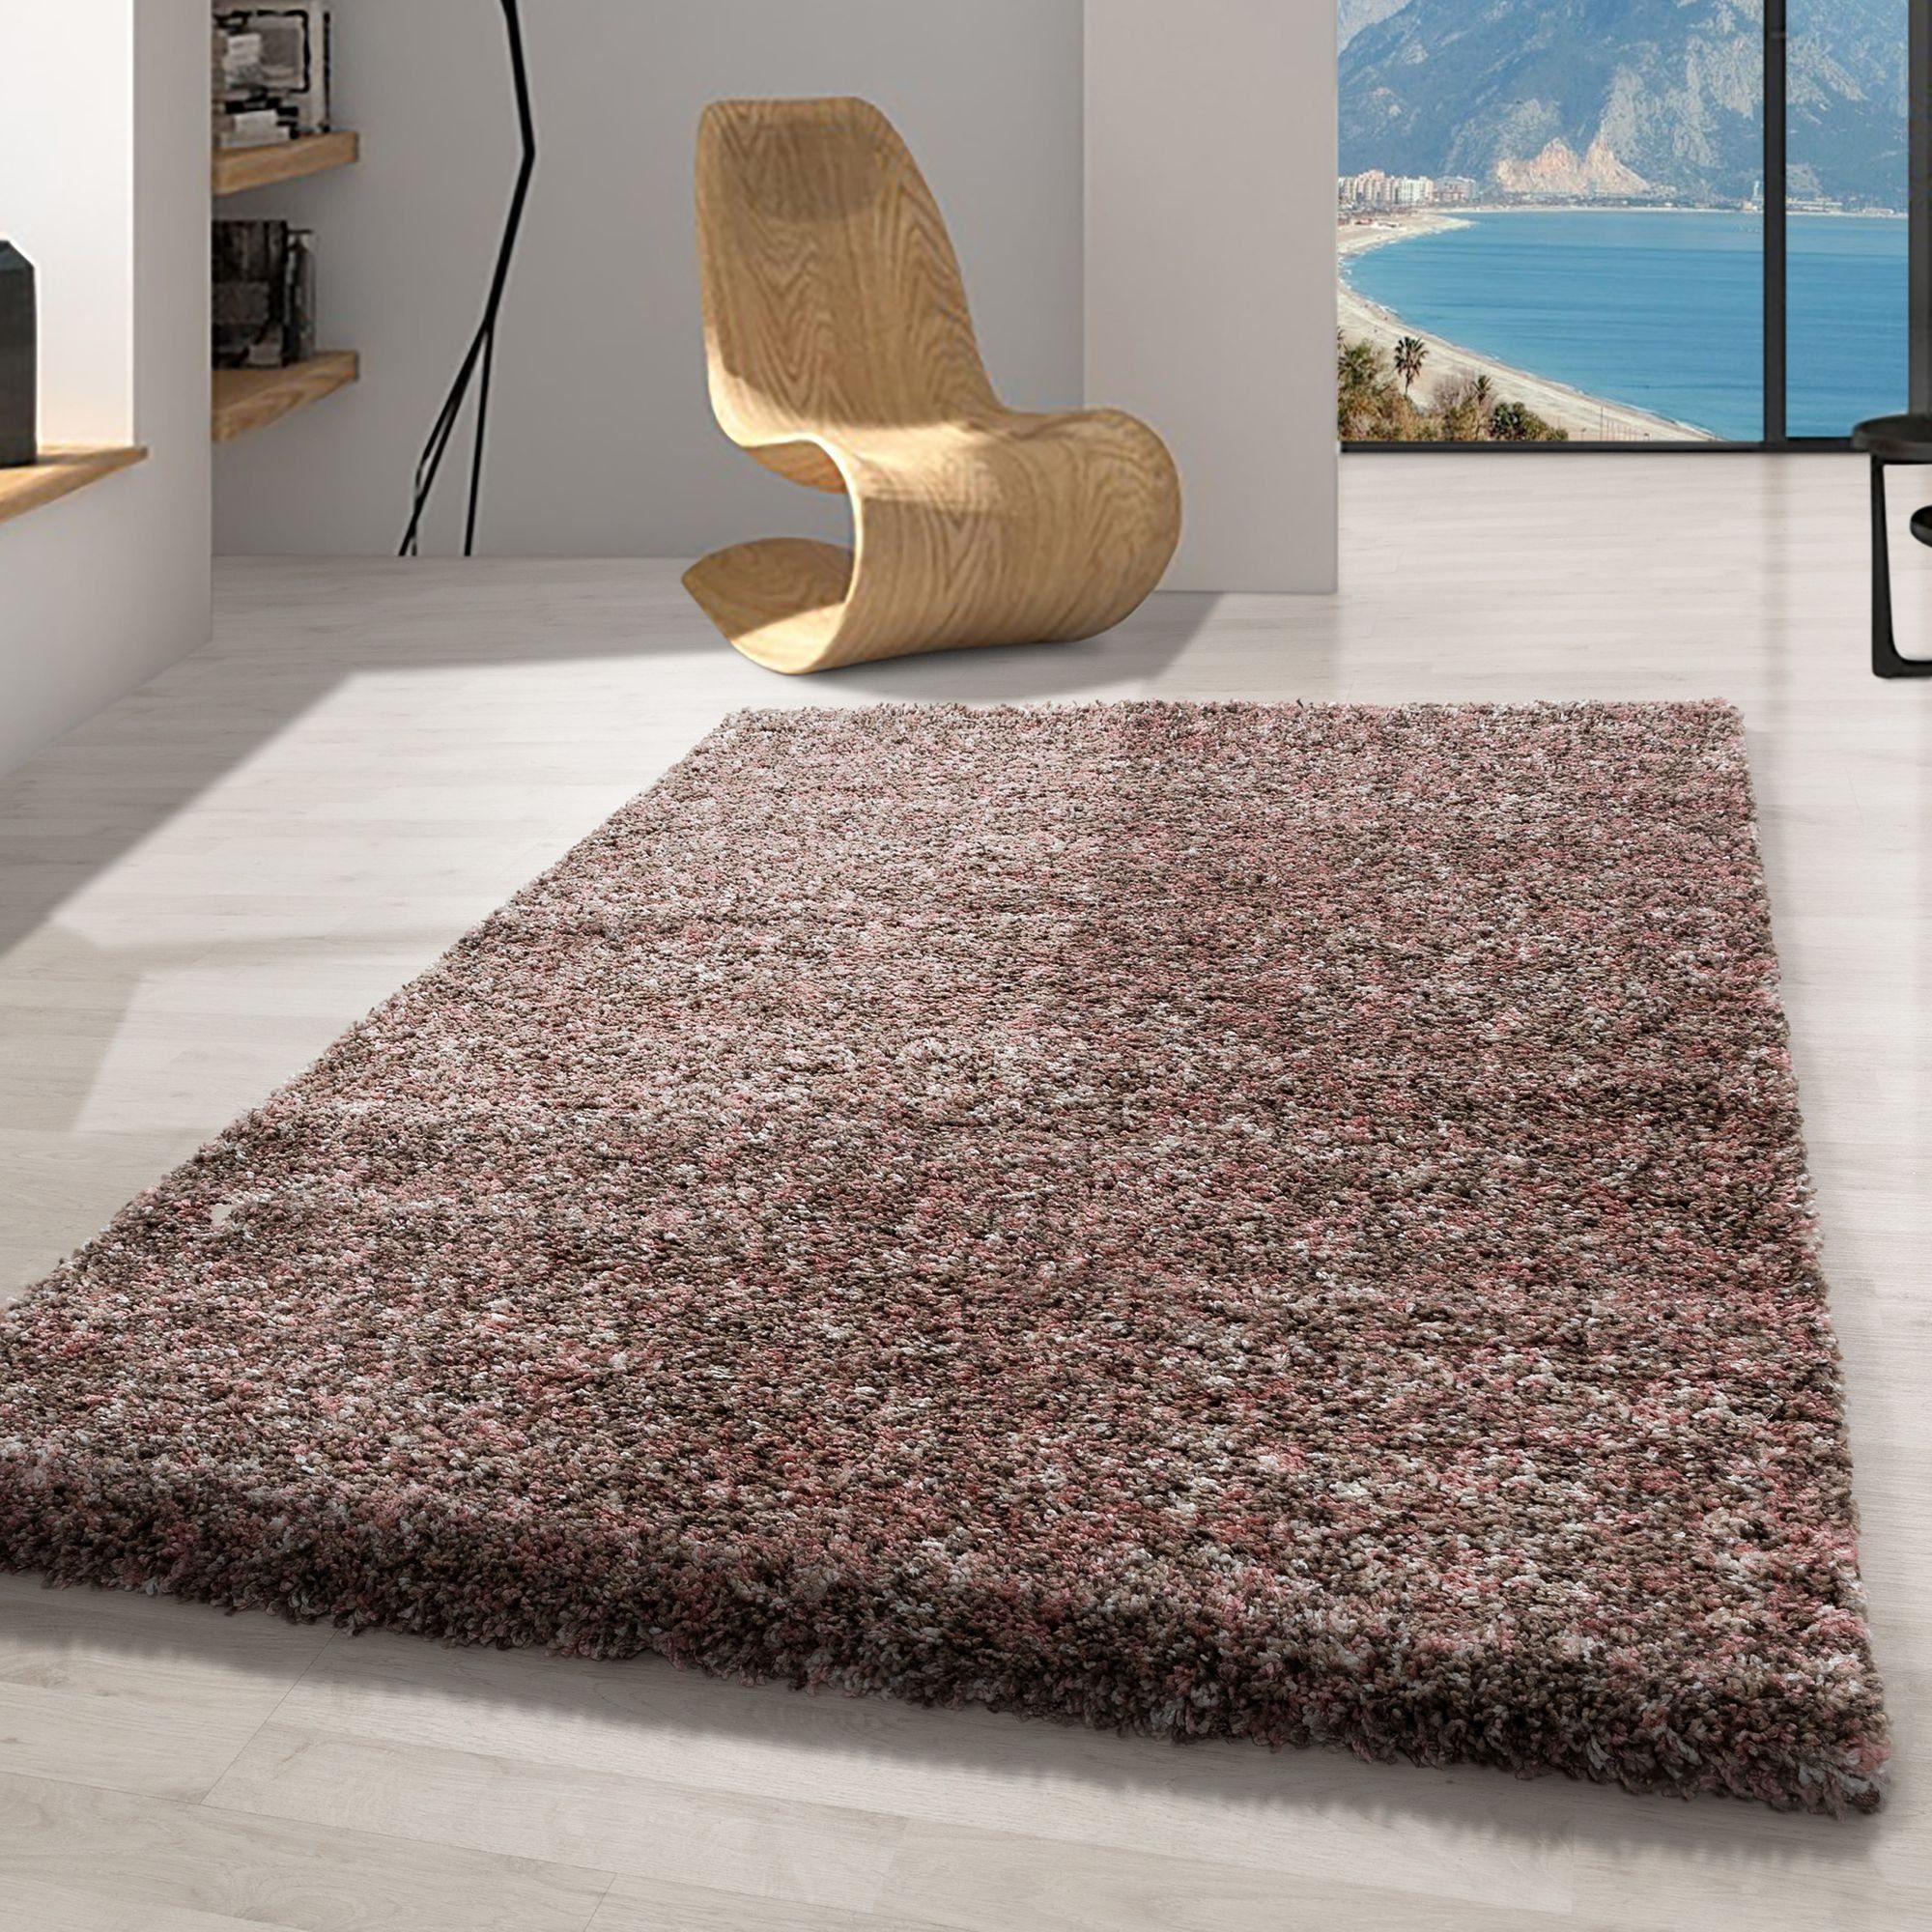 Hochflor-Teppich Meliert Design, Carpetsale24, Läufer, Höhe: 30 mm, Teppich Meliert Design Teppich Wohnzimmer versch. farben und größen Rosa-2